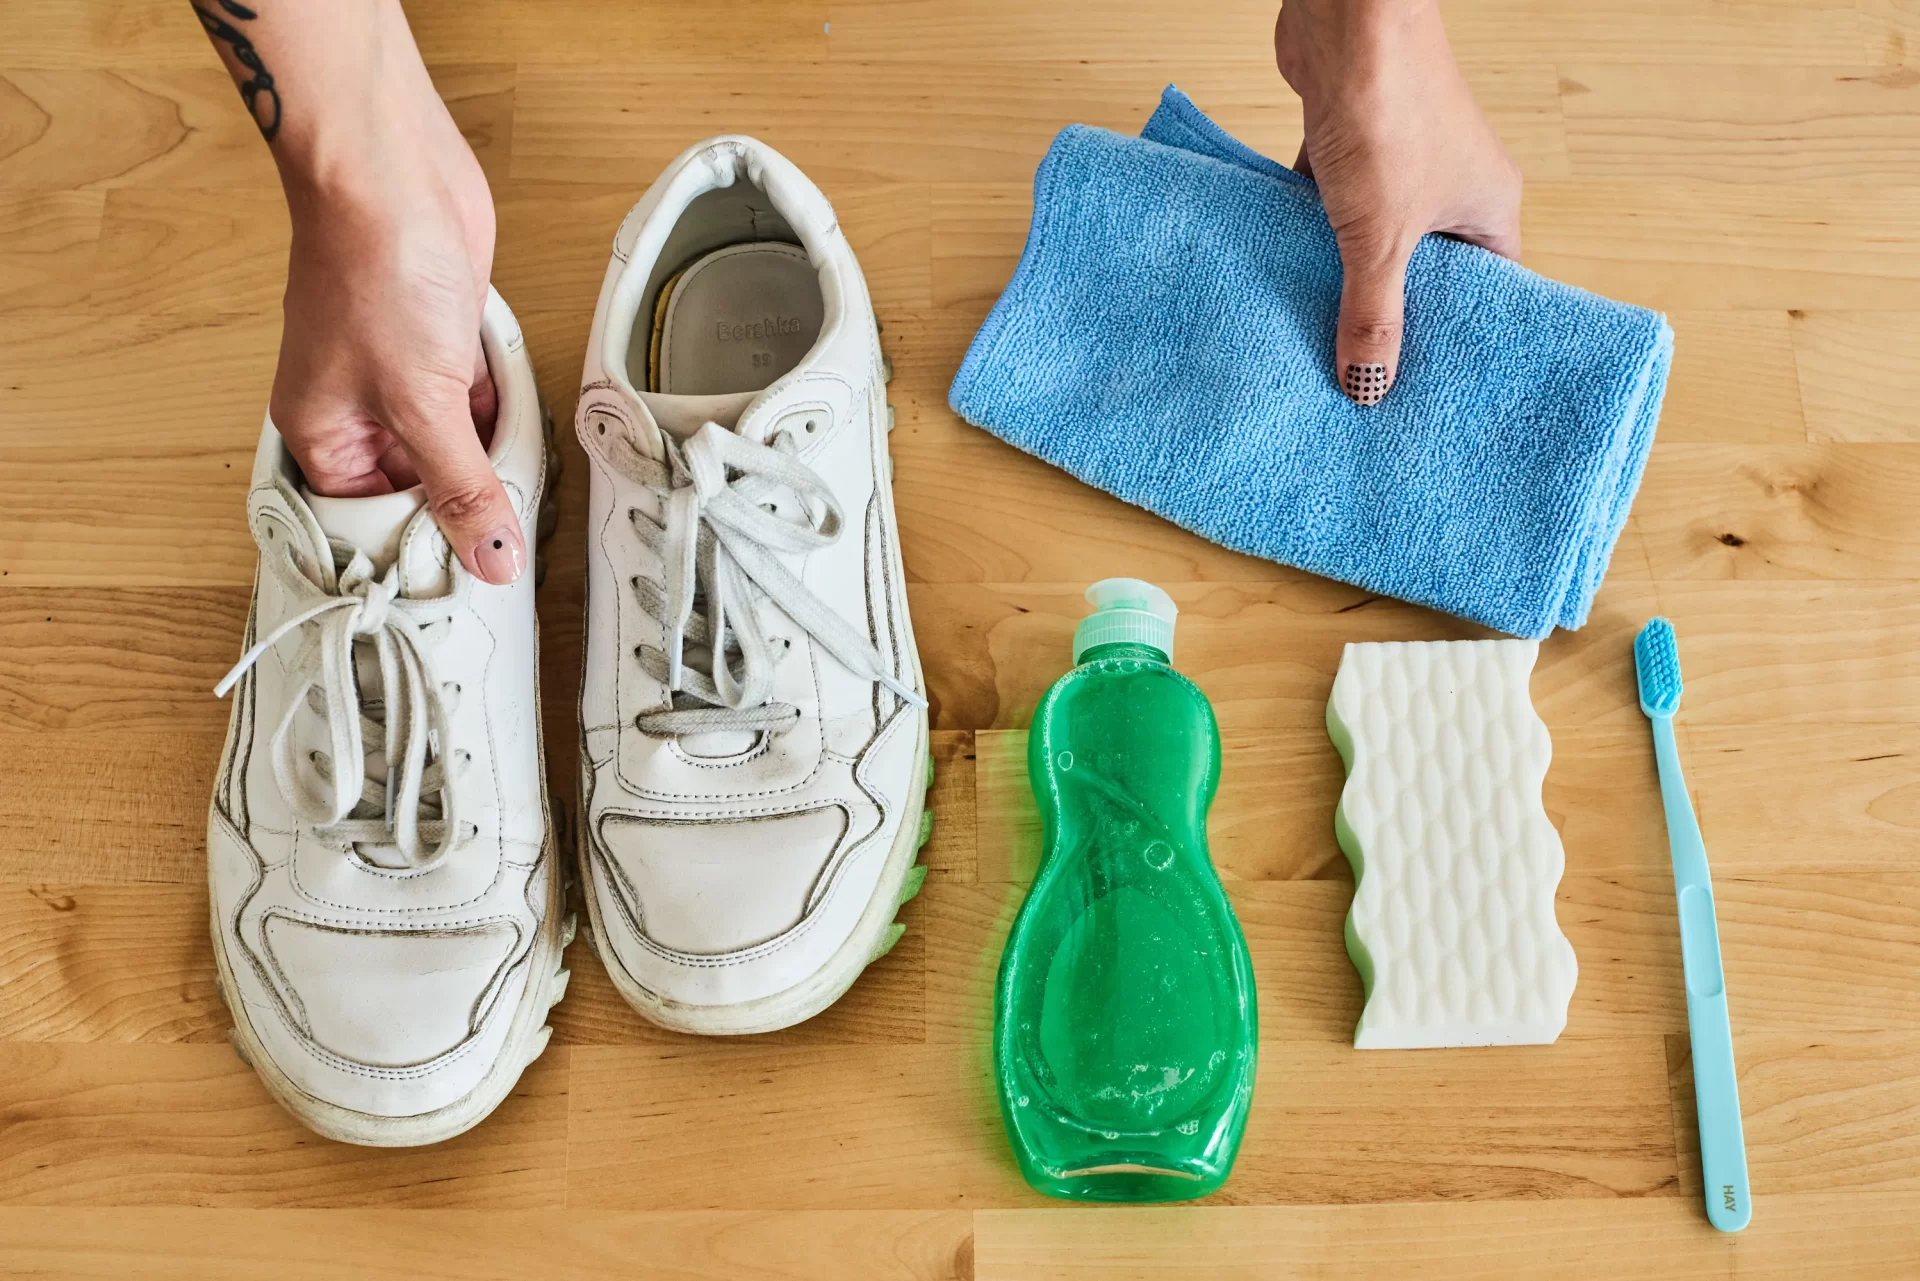 Shoes Cleaning Tips: इन 5 आसान टिप्स से चमकाएं अपने सफेद जूते, ऐसे करें इस्तेमाल